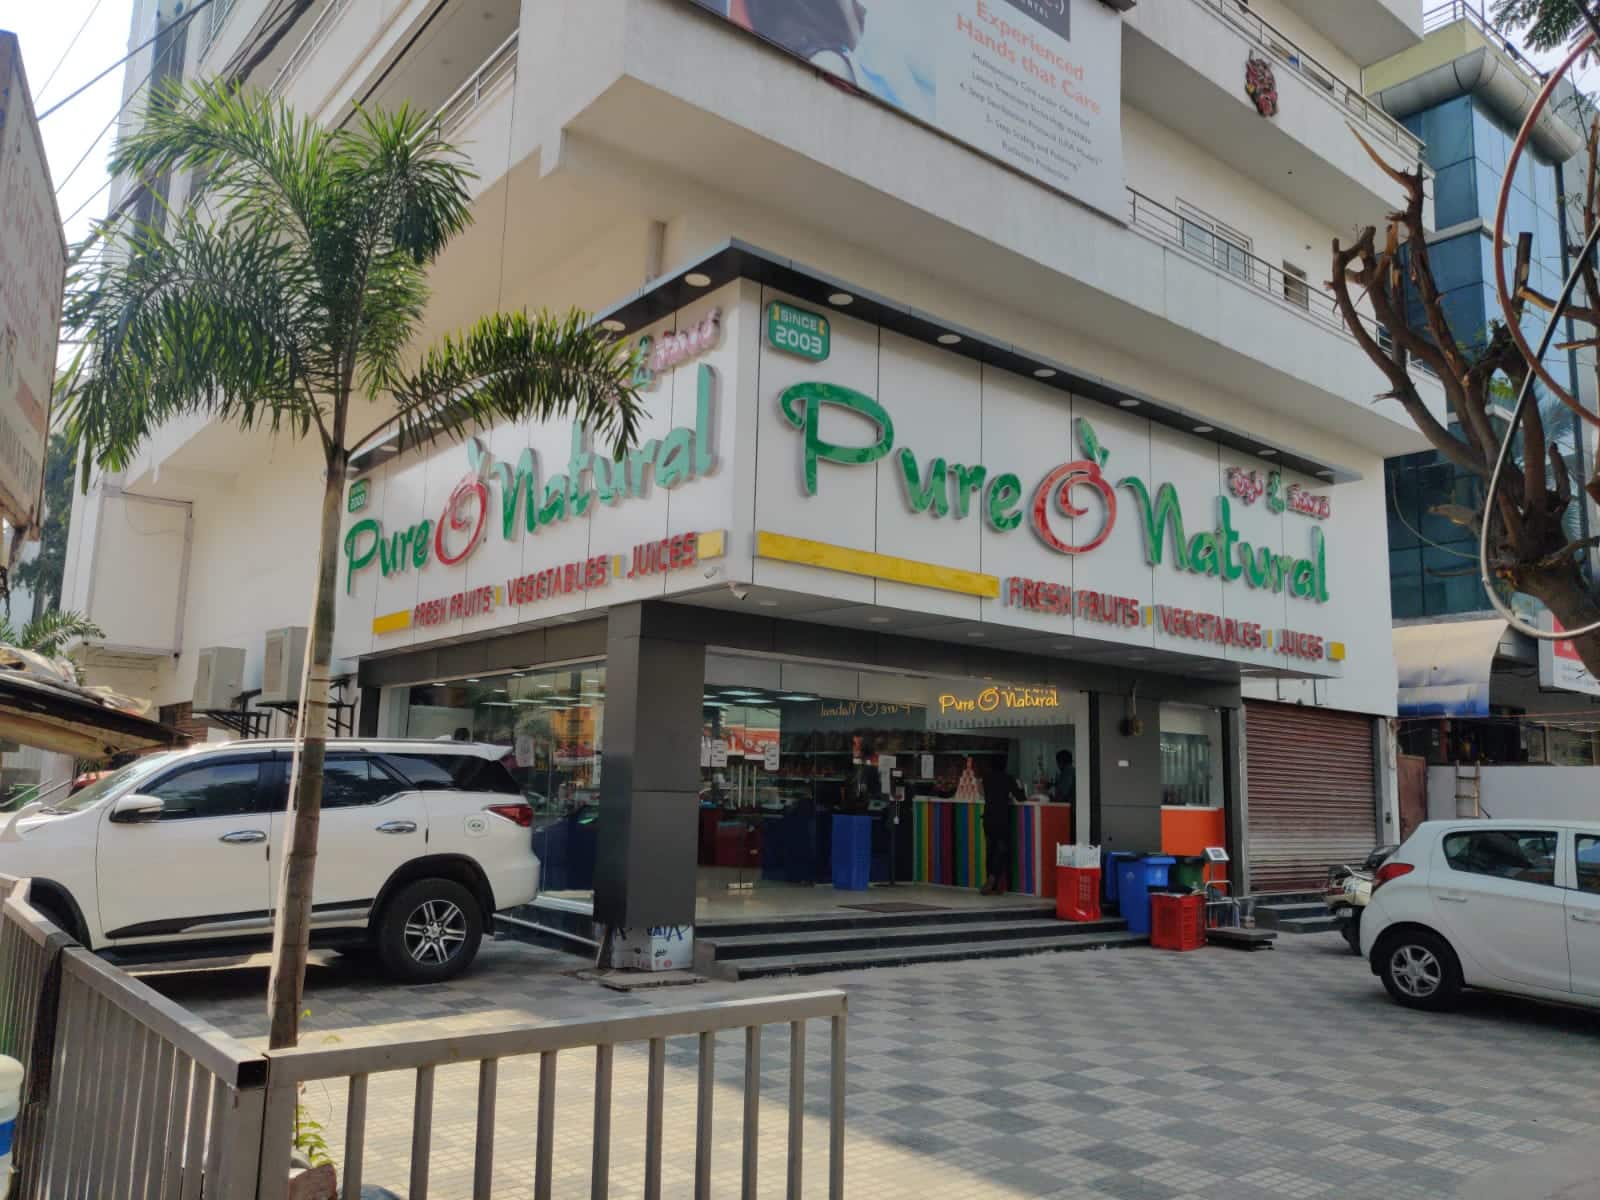 Reviews of Pure O Natural, S R Nagar, Hyderabad